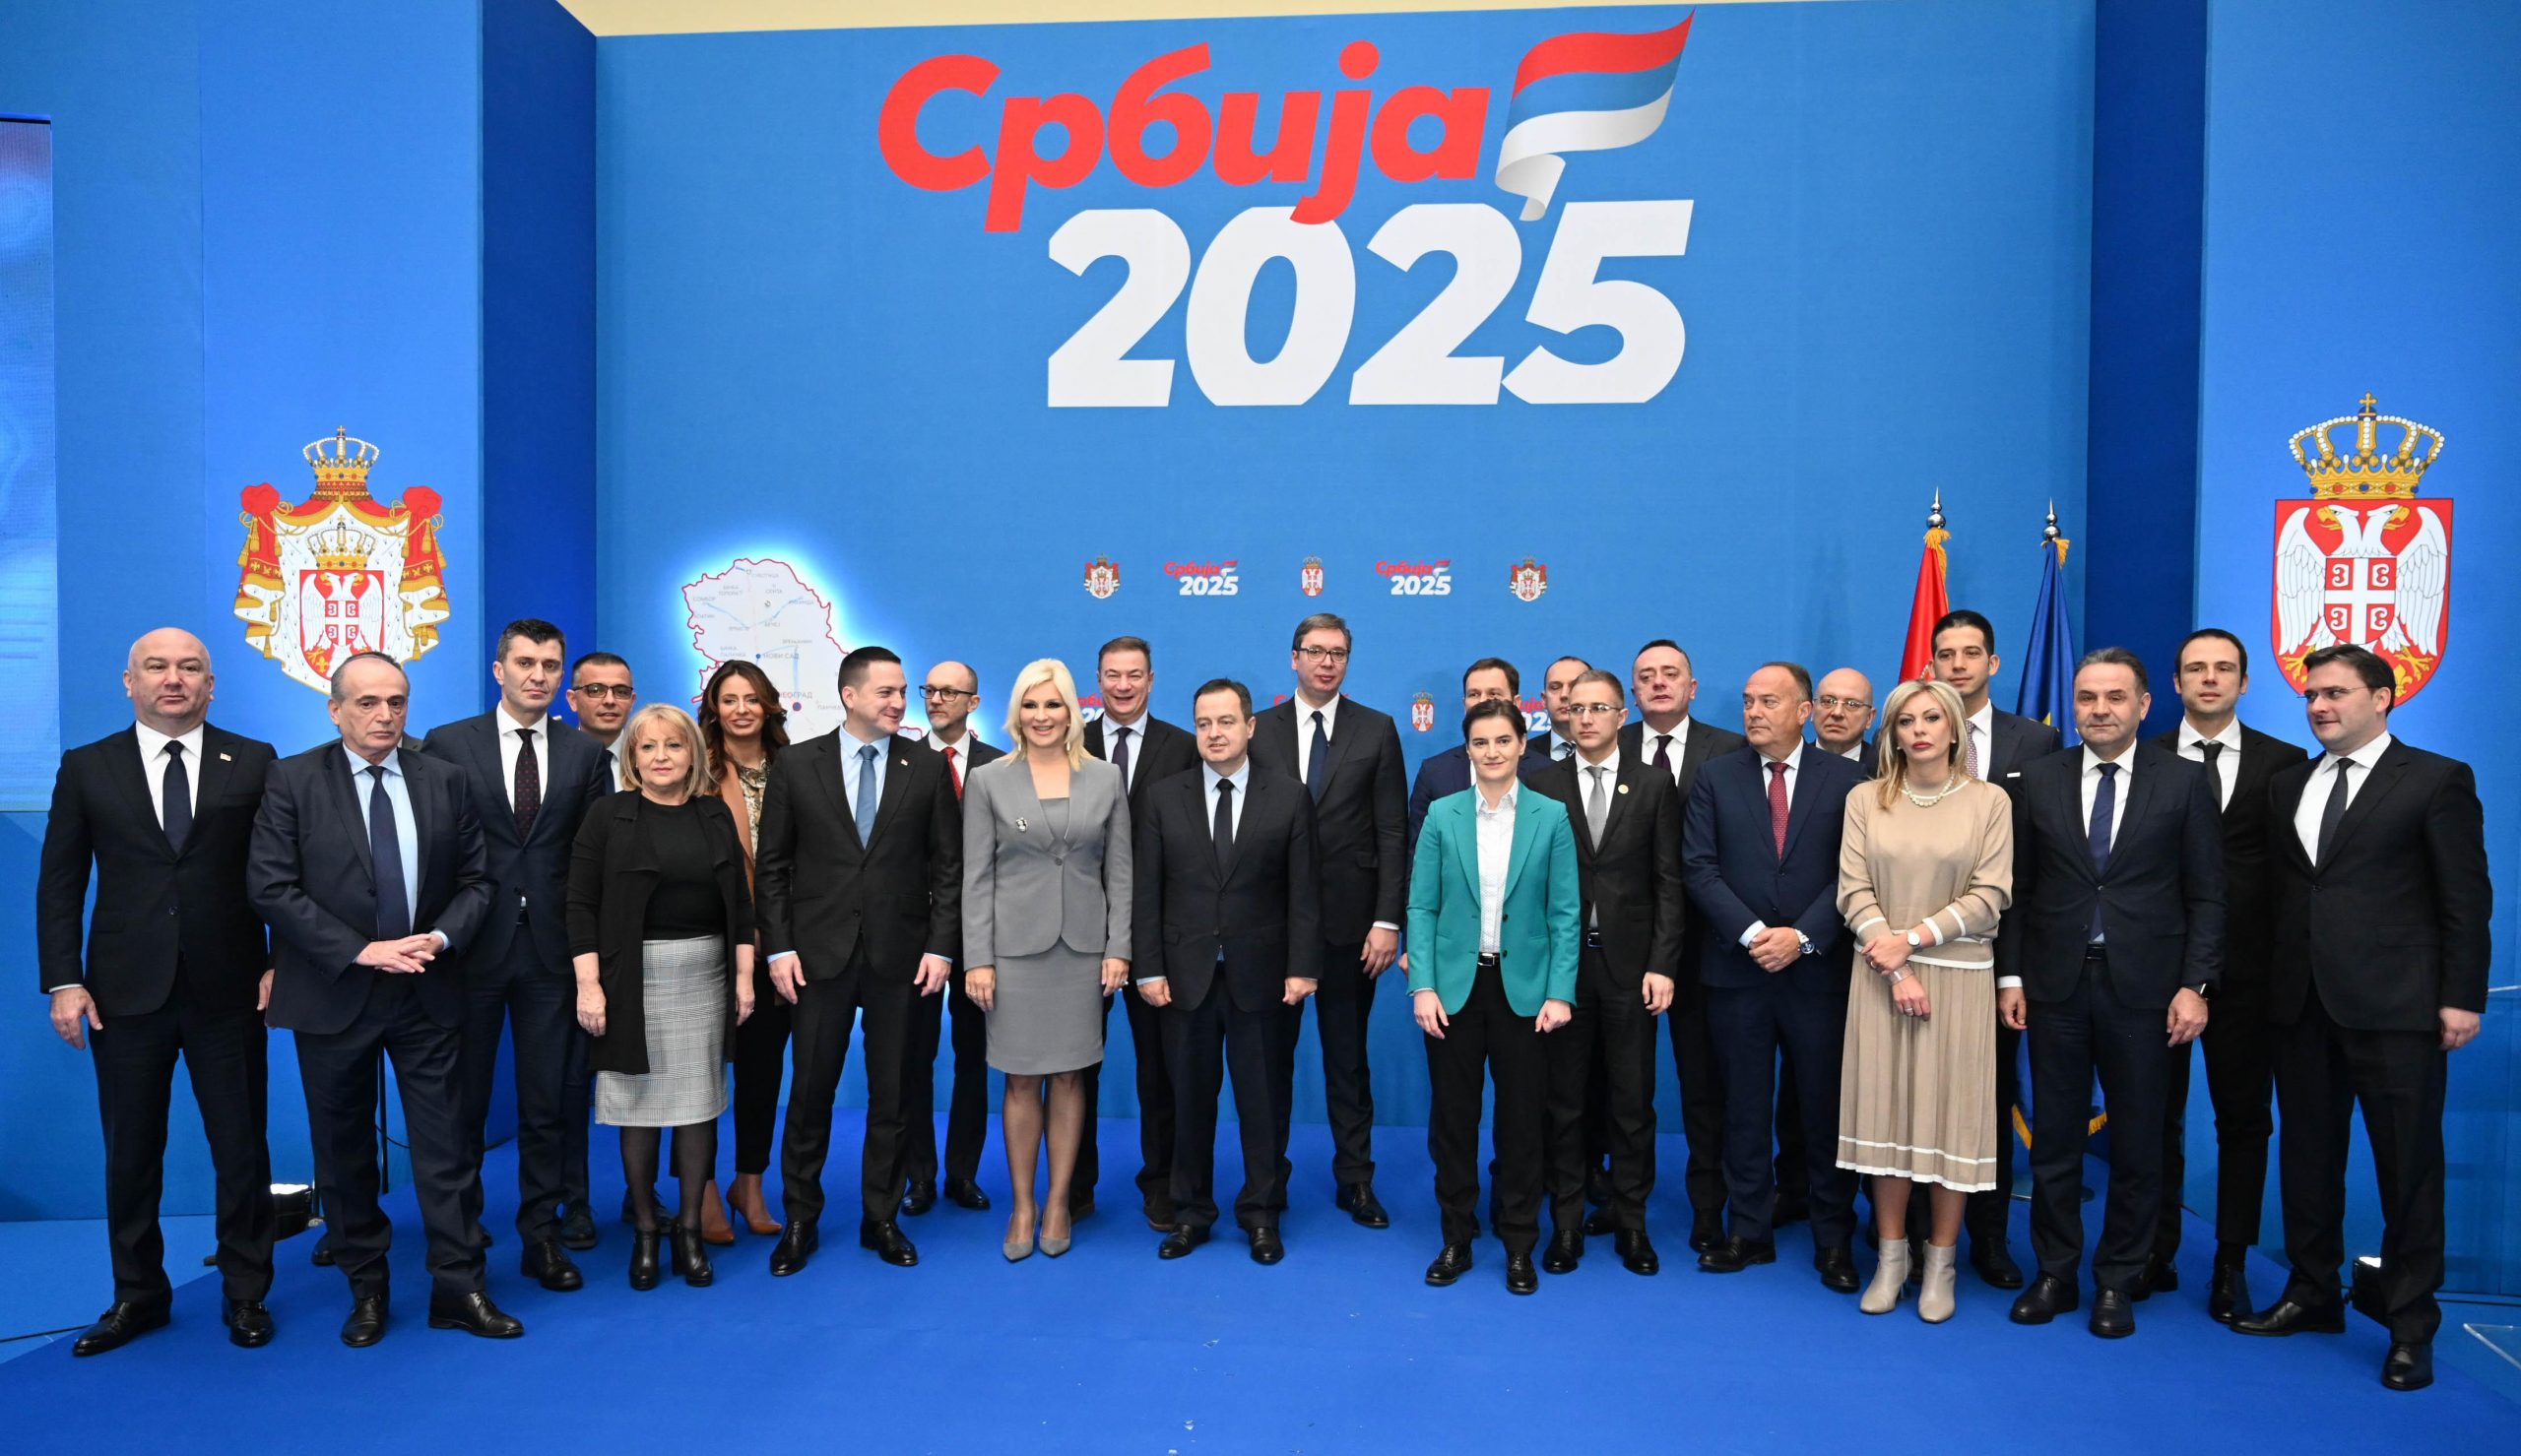 Srbija do 2025 - uvod u funkcionersku kampanju za predstojeće izbore 1